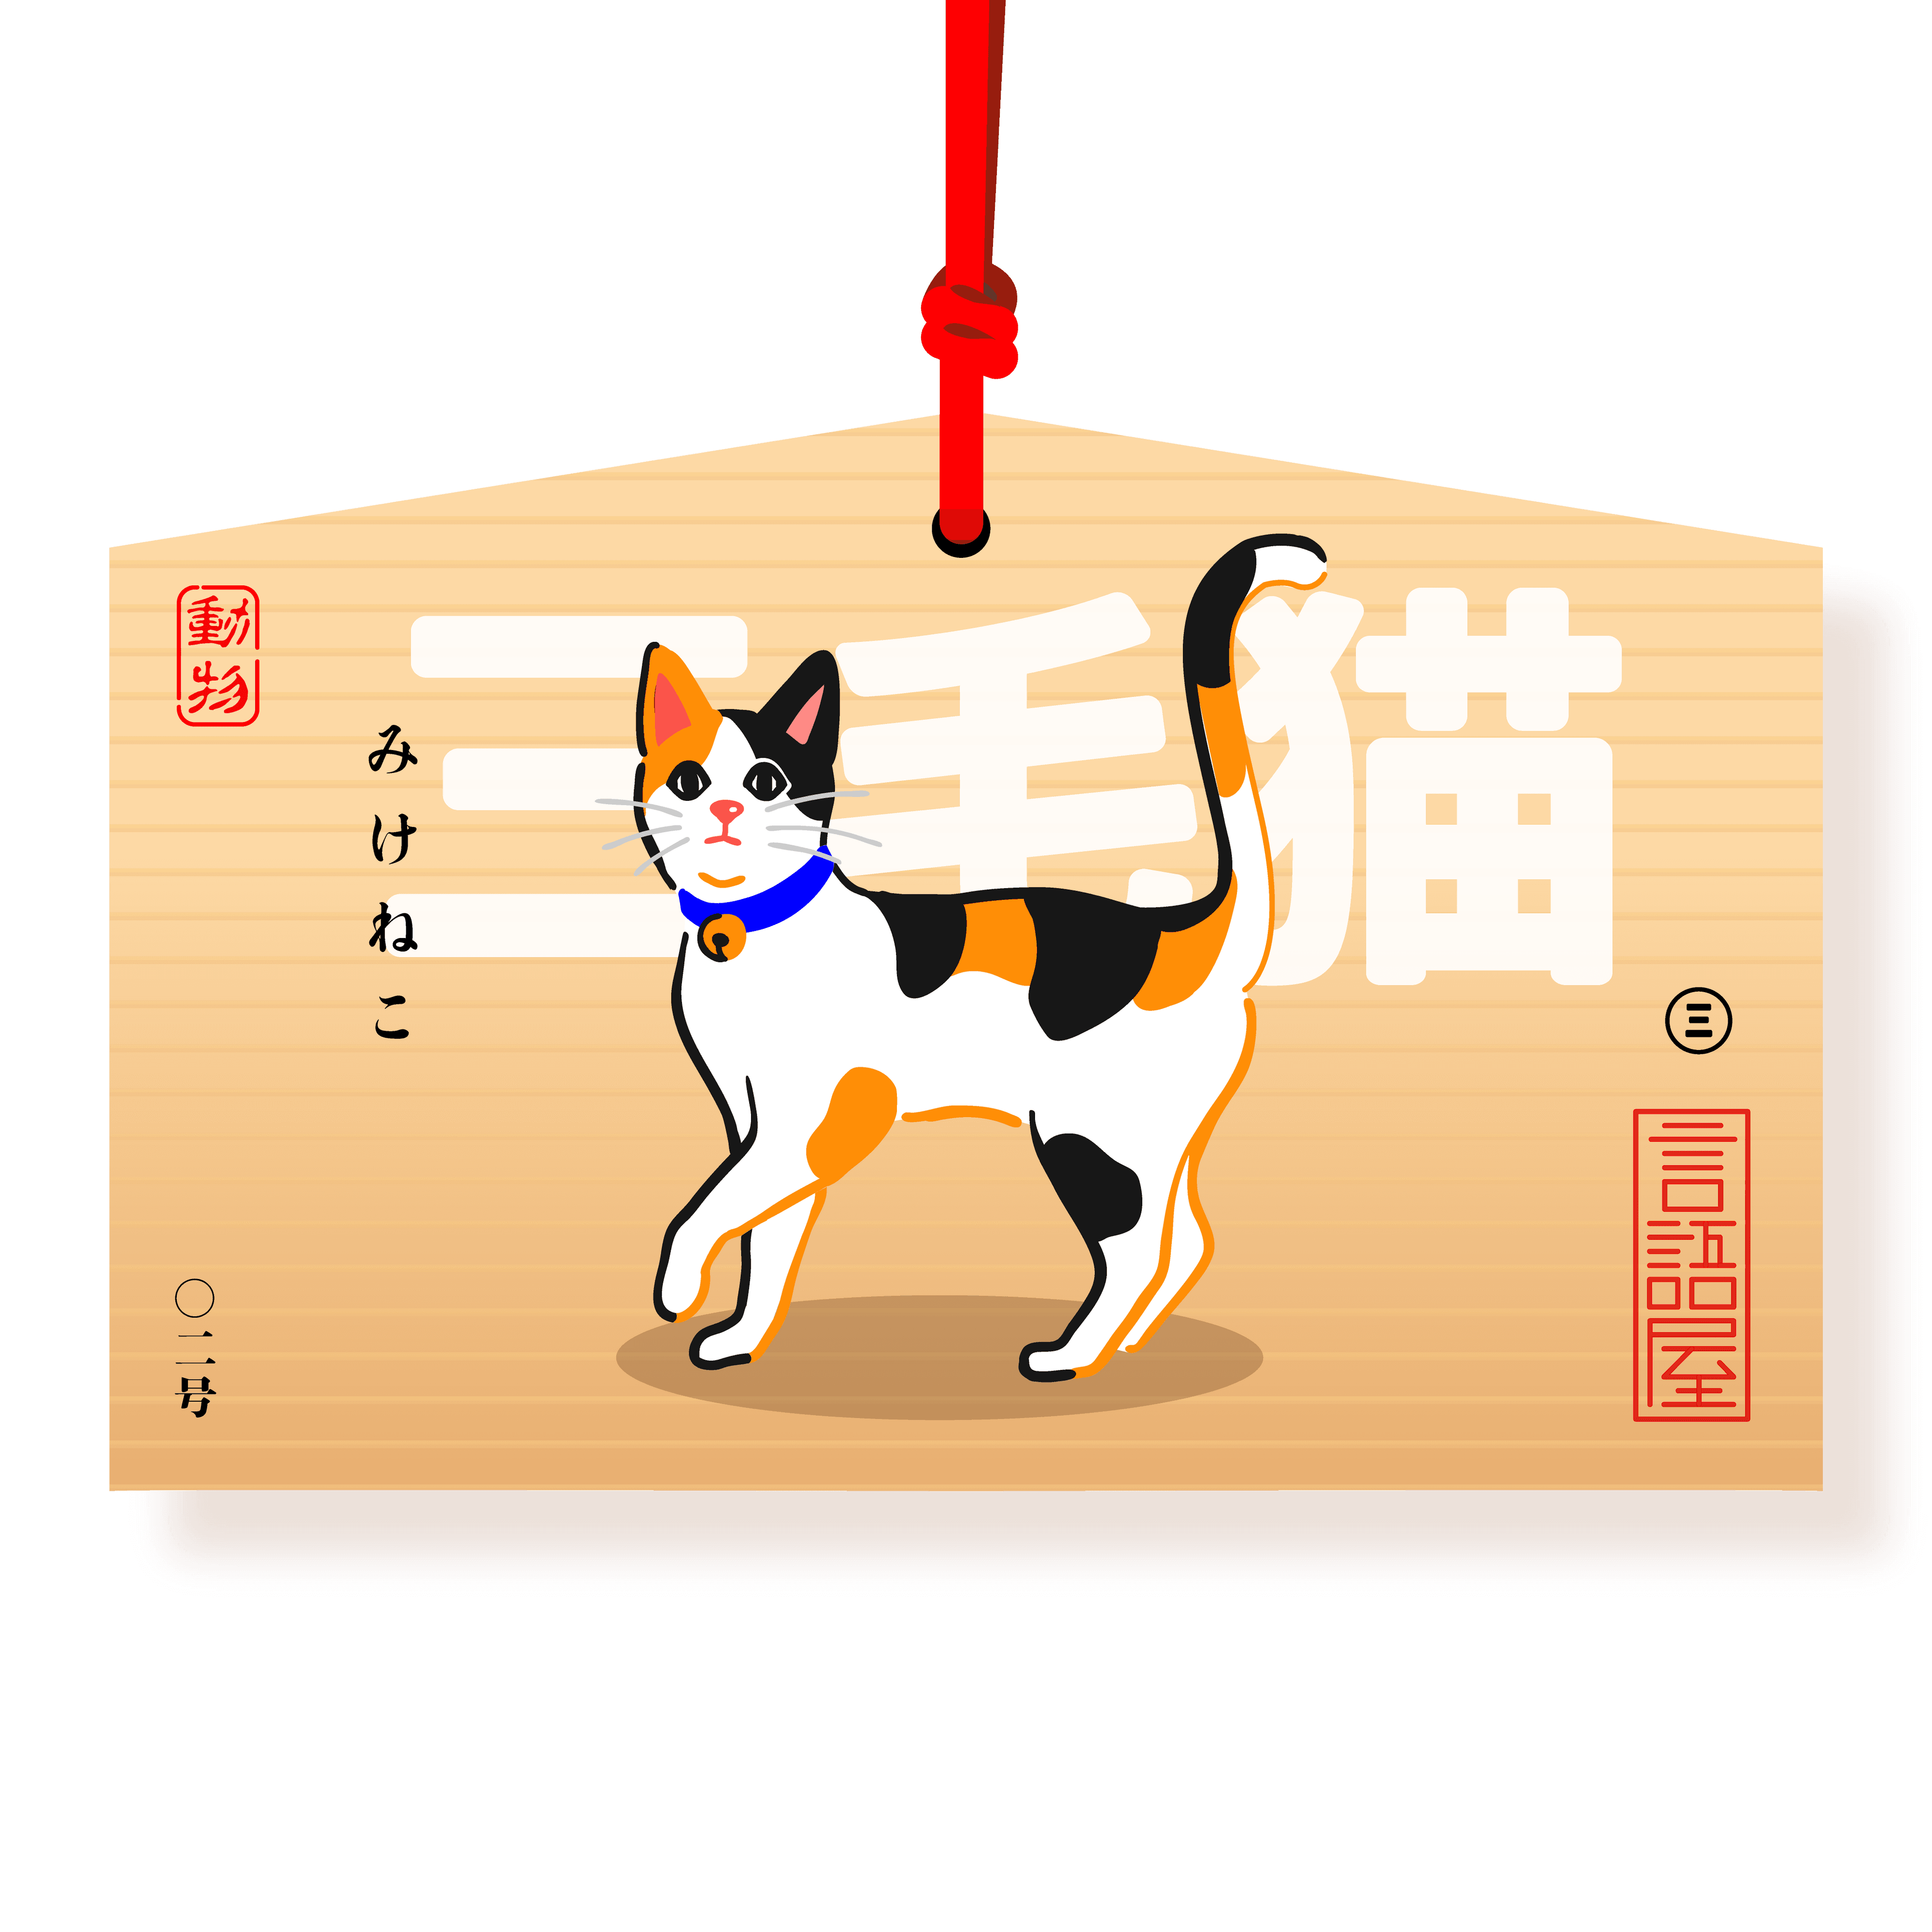 Calico Cat | Mikeneko 三毛猫